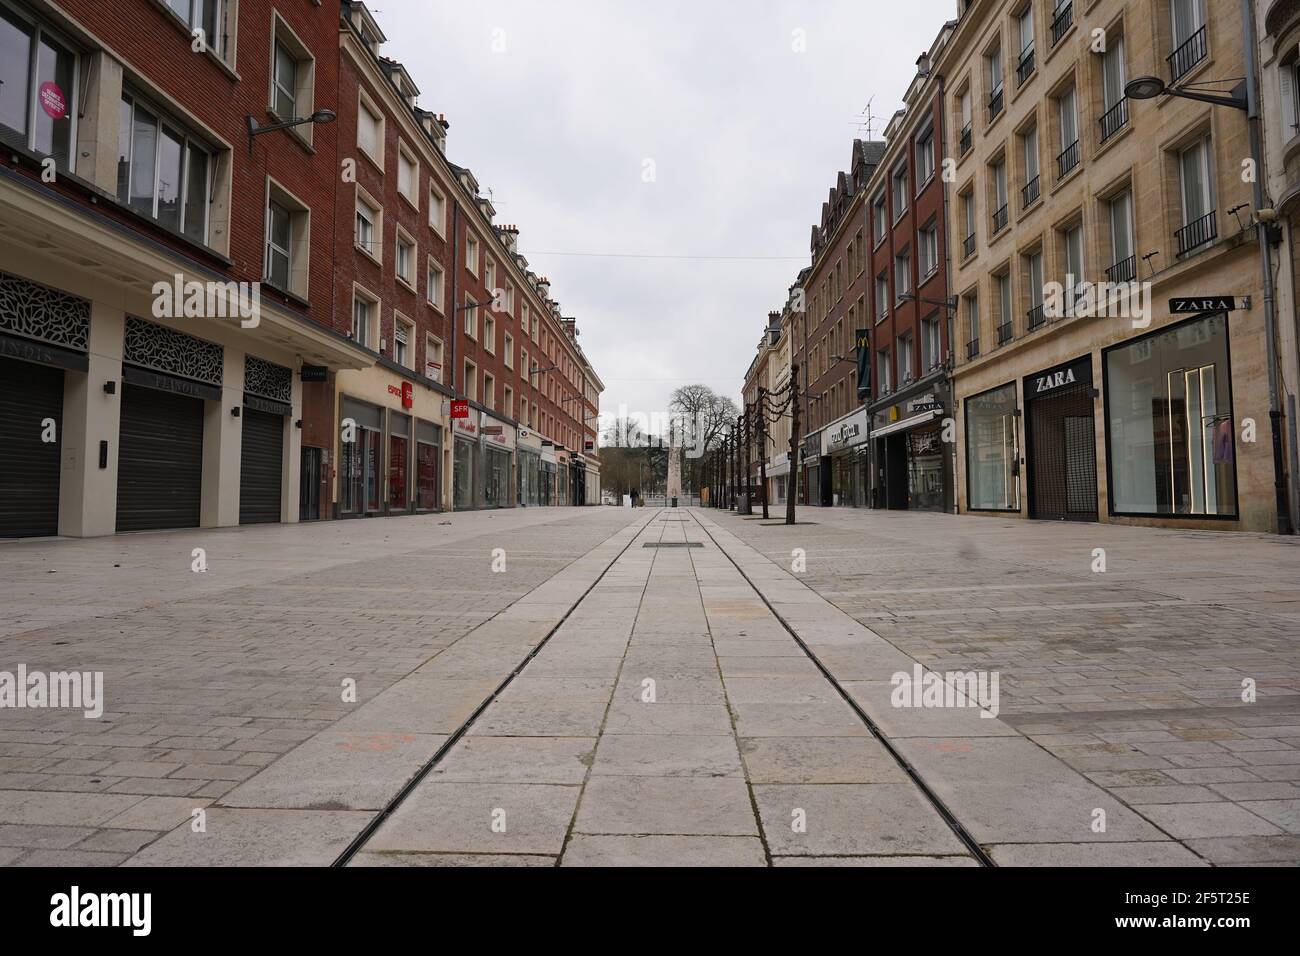 AMIENS, FRANCIA - 21 MARZO 2020 : strade deserte a causa della pandemia di Covid-19. Confinamento nazionale in Francia. Foto Stock